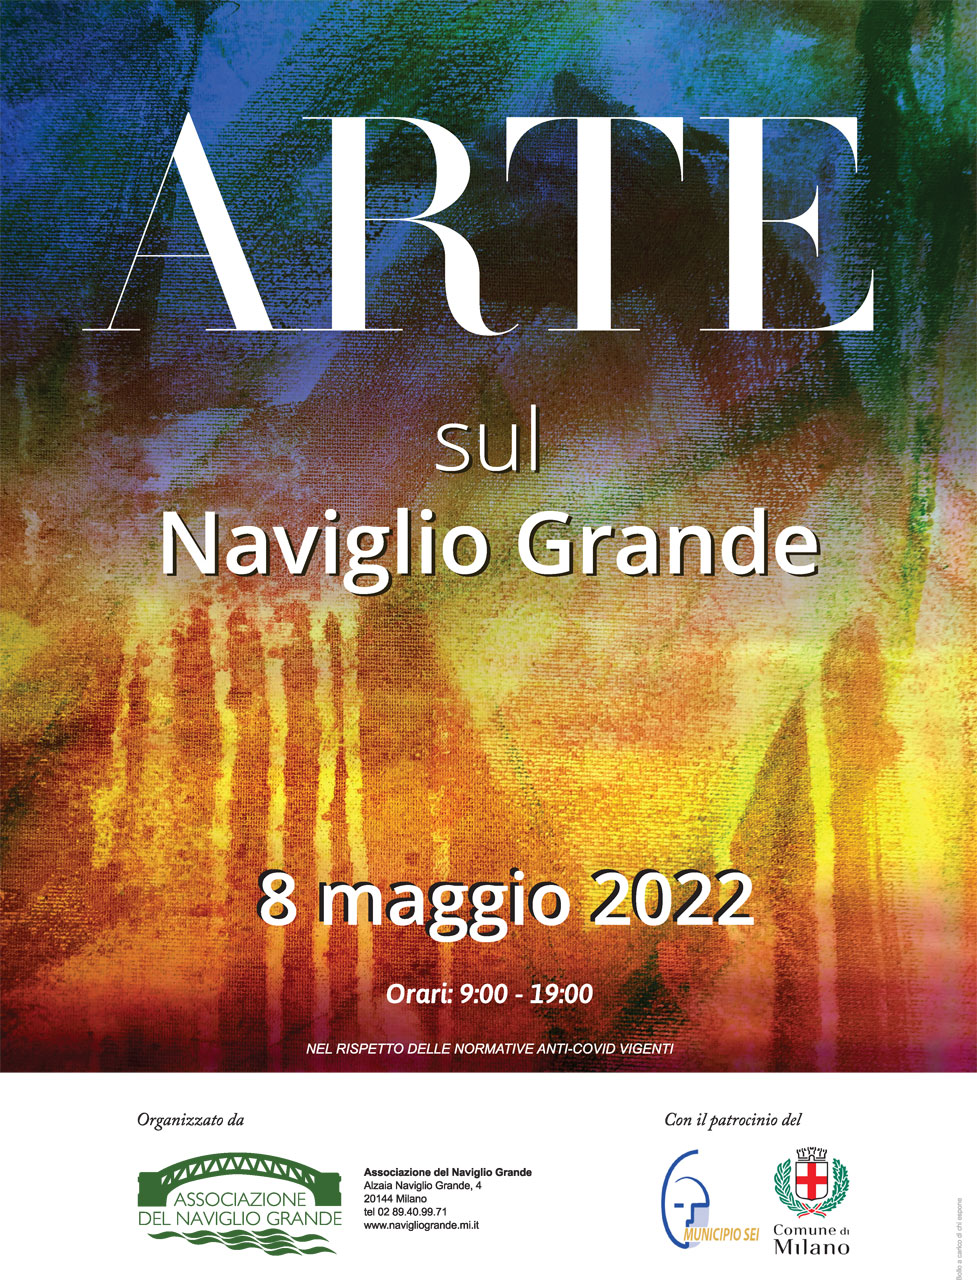 Annamaria Di Giorgi espone le sue opere ad Arte sul Naviglio Grande - Milano, 8 maggio 2022